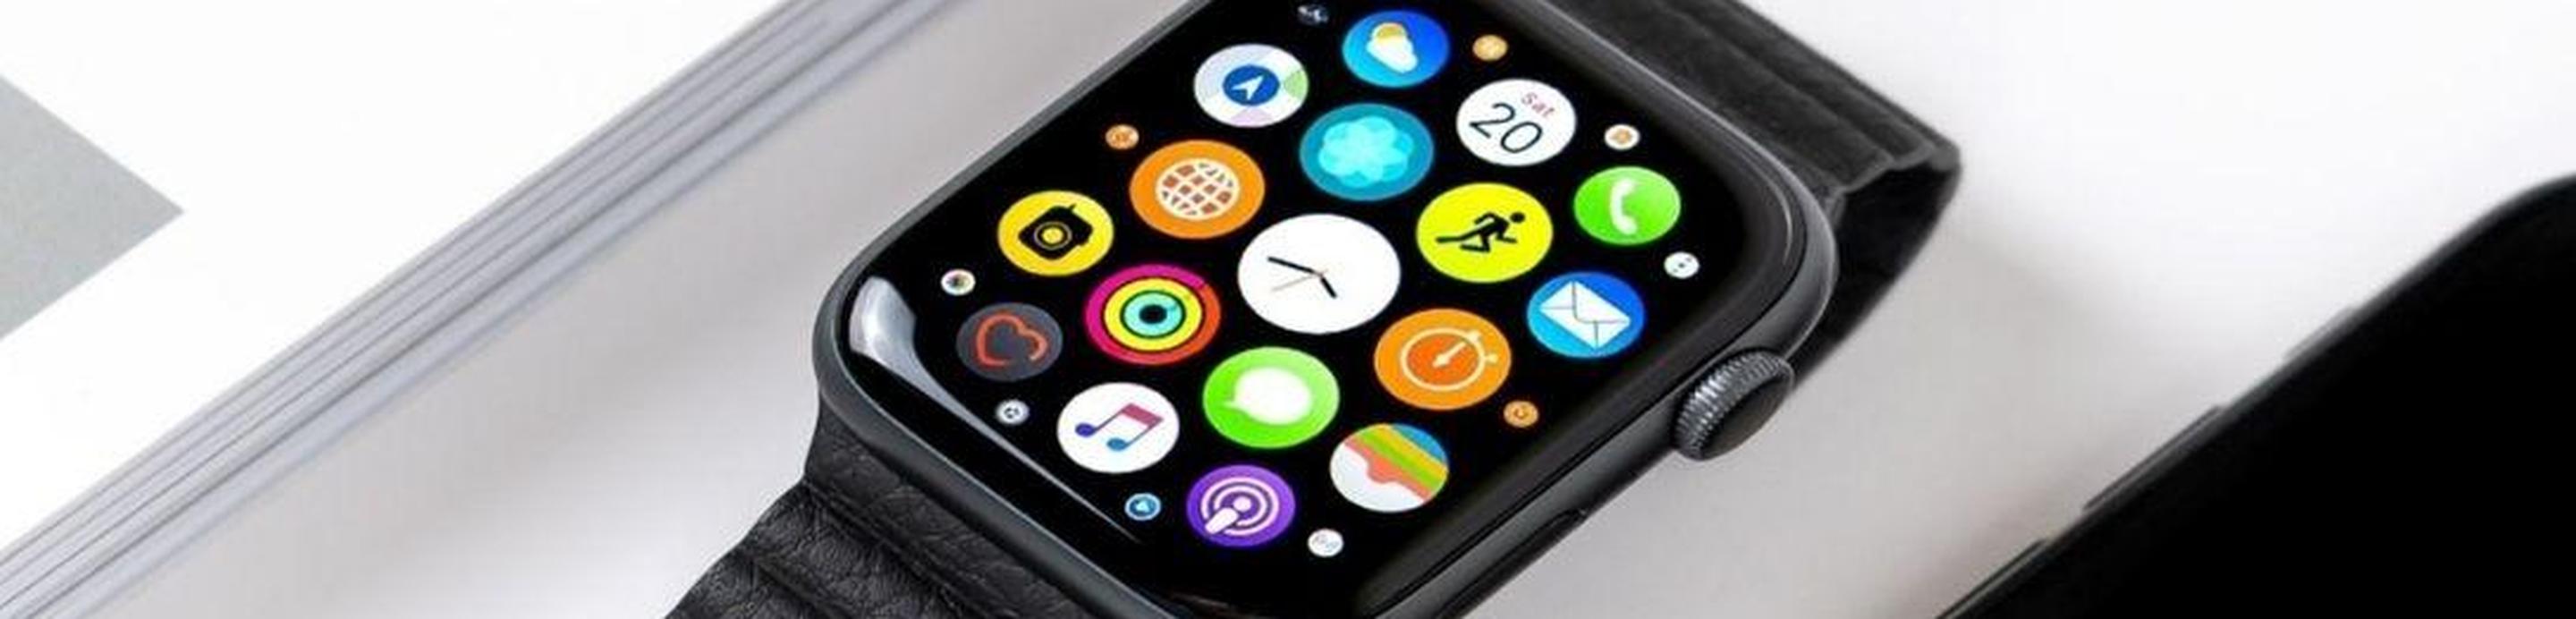 pantalla del apple watch en negro